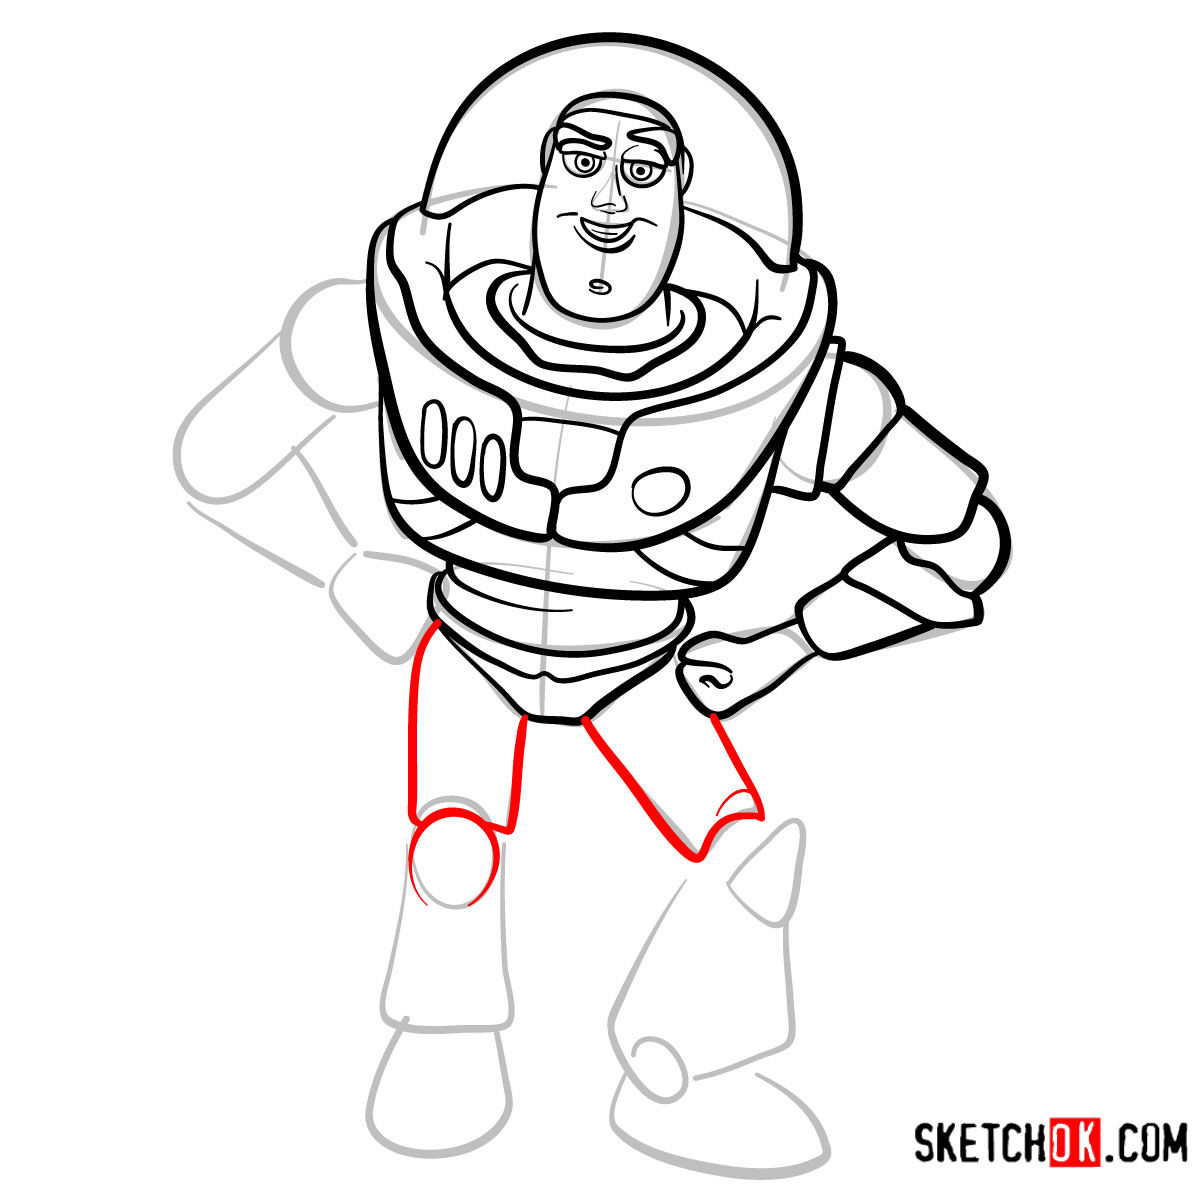 How to draw Buzz Lightyear | Toy Story - step 10